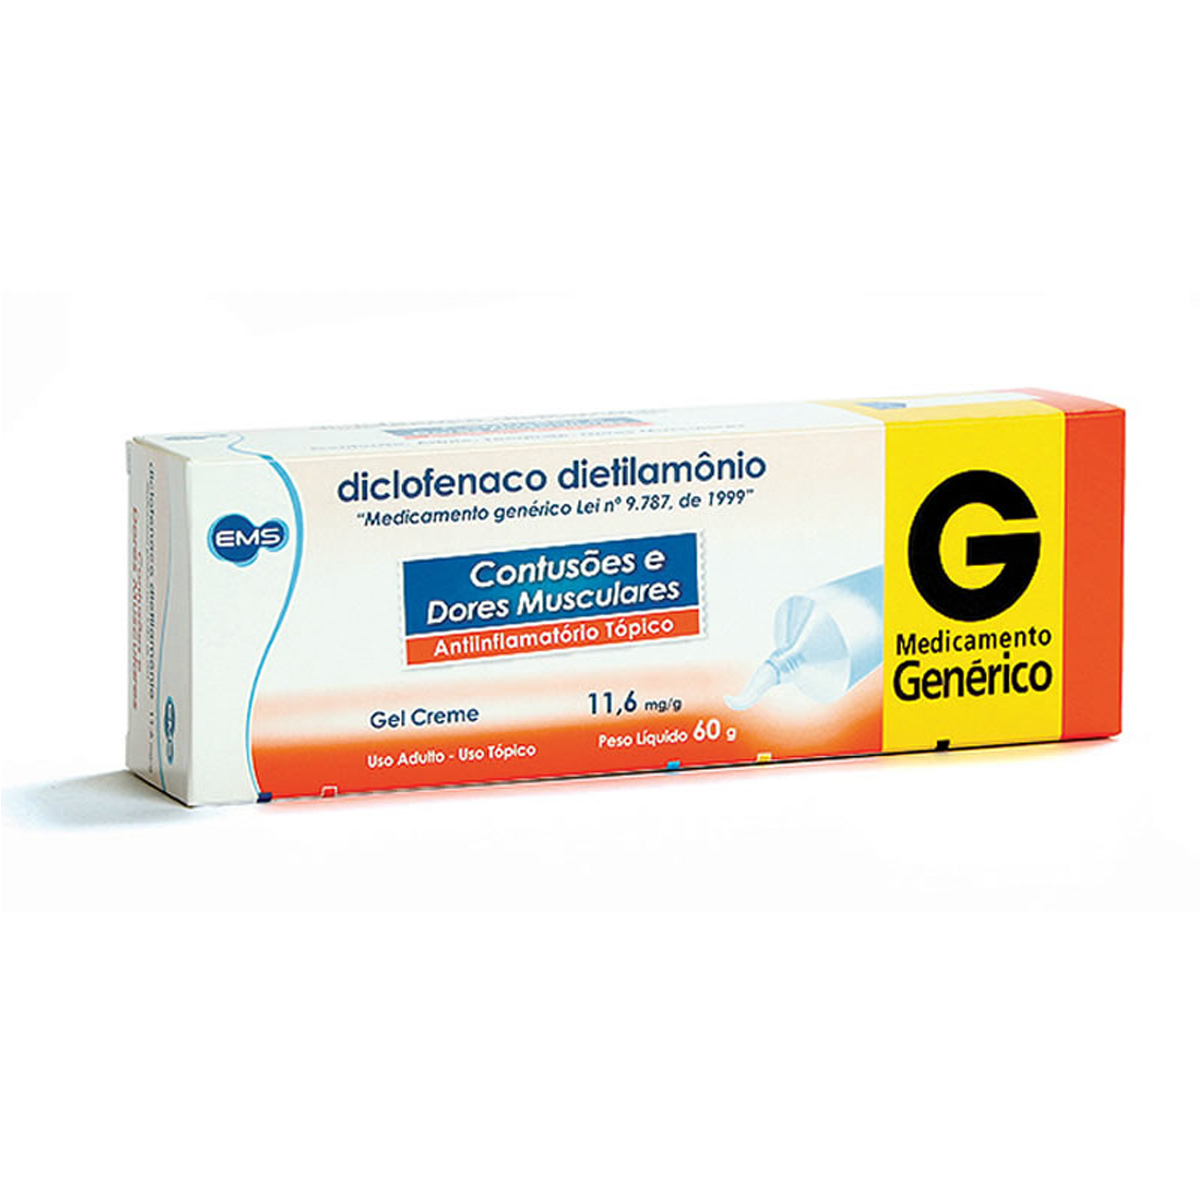 Diclofenaco Dietilamônio 11,6mg/g EMS Gel Creme com 60g